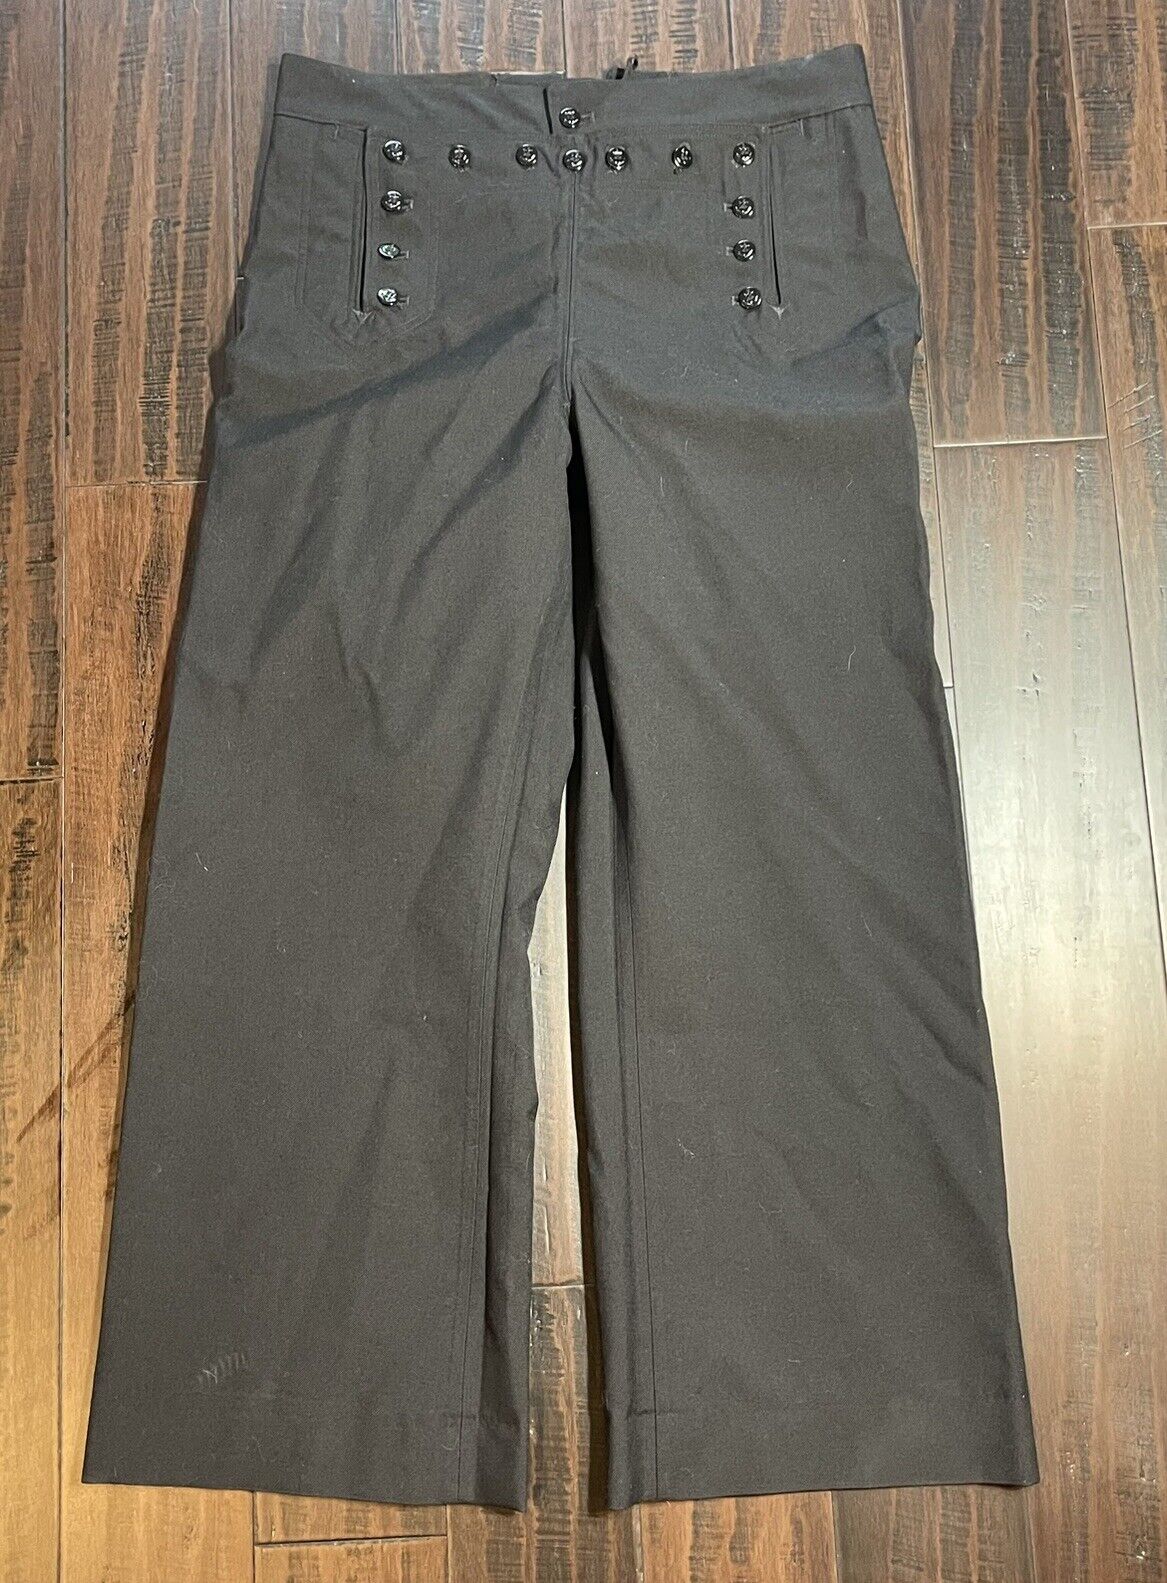 US Navy Cracker Jack Uniform Dress Pants 36R Wool 13 Button Sailor Lace Up Vtg